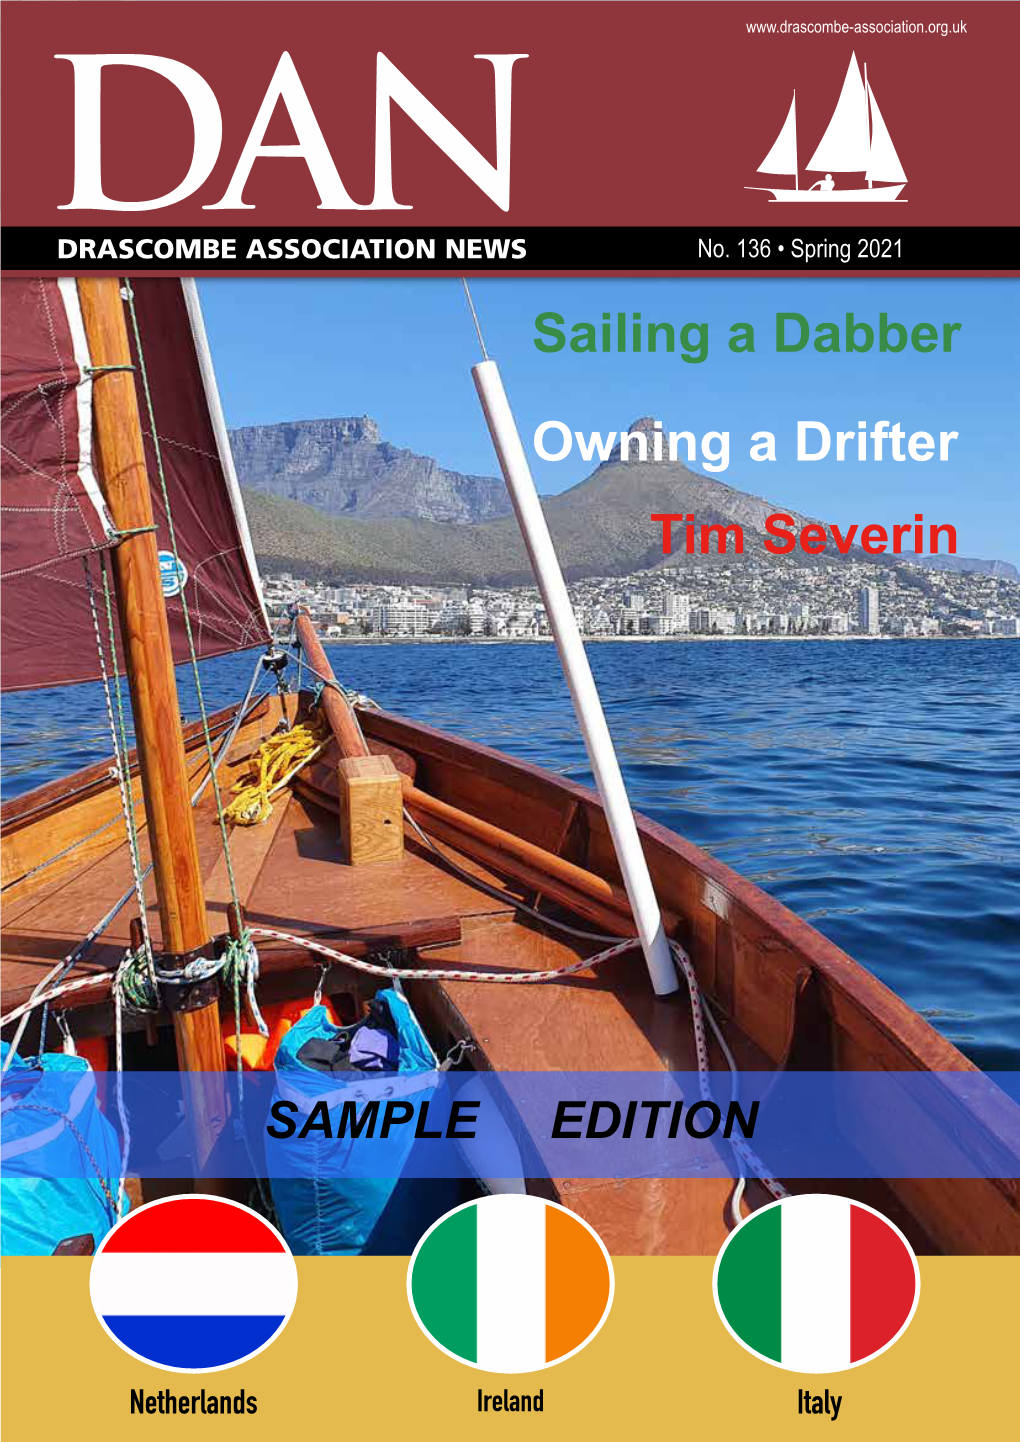 Sailing a Dabber Owning a Drifter Tim Severin